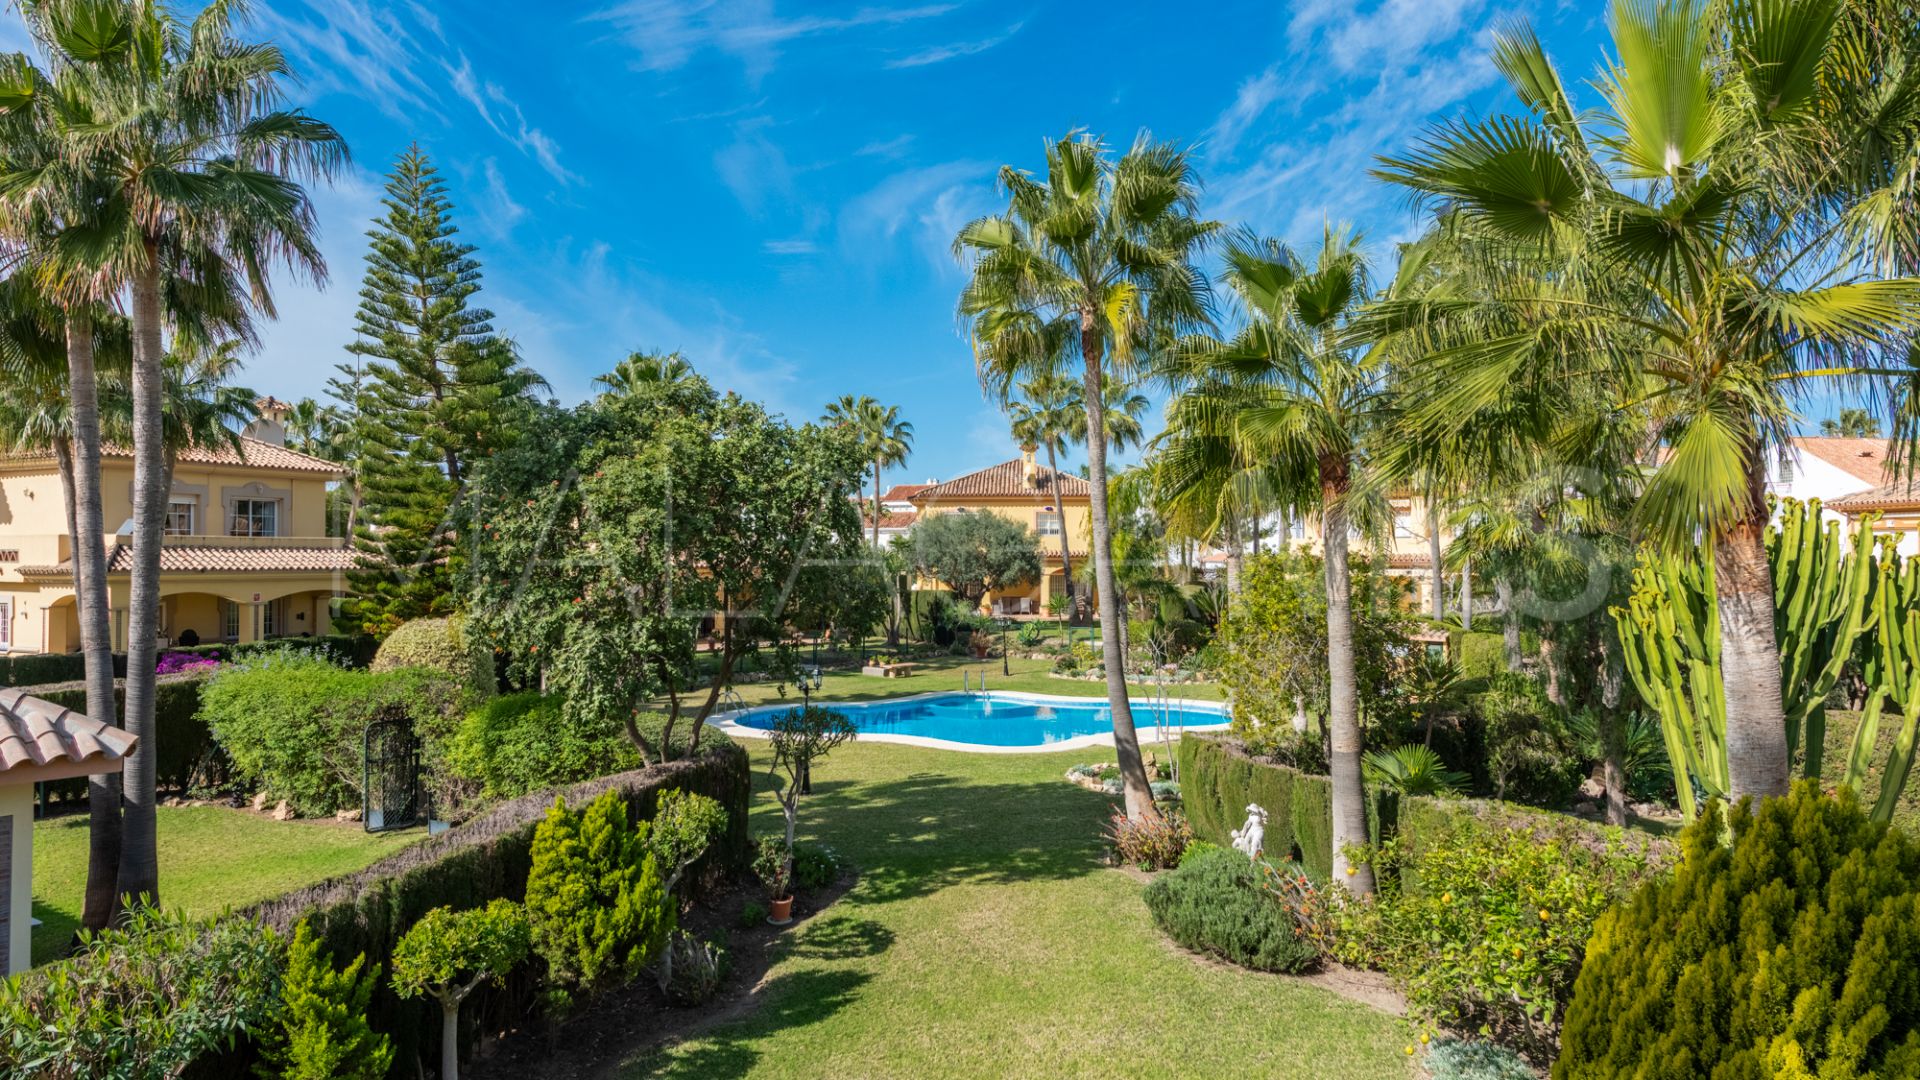 3 bedrooms Monte Biarritz villa for sale